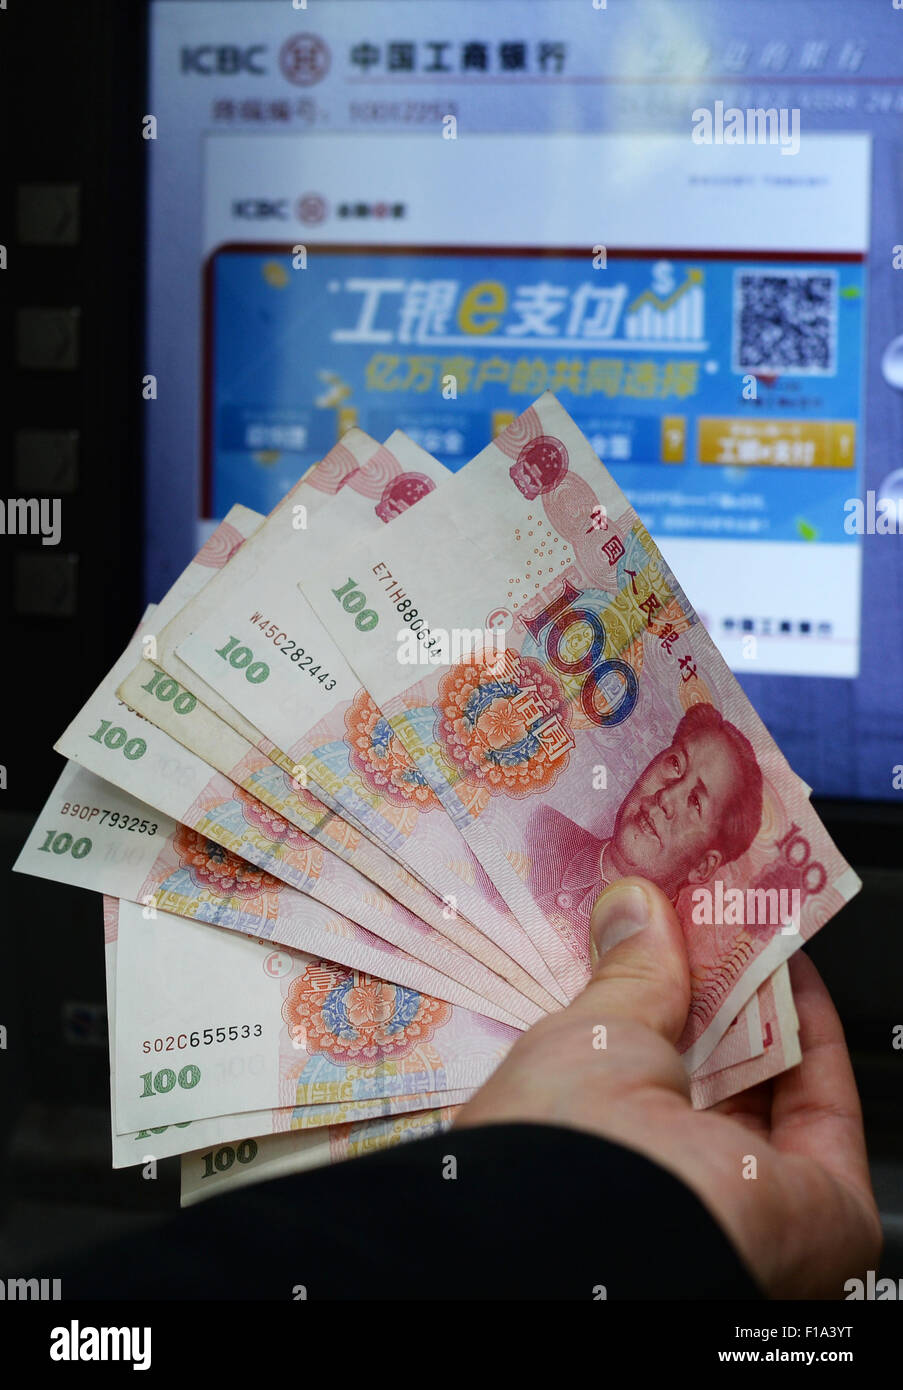 Shanghai, Cina. 28 Agosto, 2015. Renminbi banconote, la moneta ufficiale della Repubblica popolare cinese, sono visibili nella parte anteriore di un ATM in Cina a Shanghai, 28 agosto 2015. Foto: Jens Kalaene/dpa/Alamy Live News Foto Stock